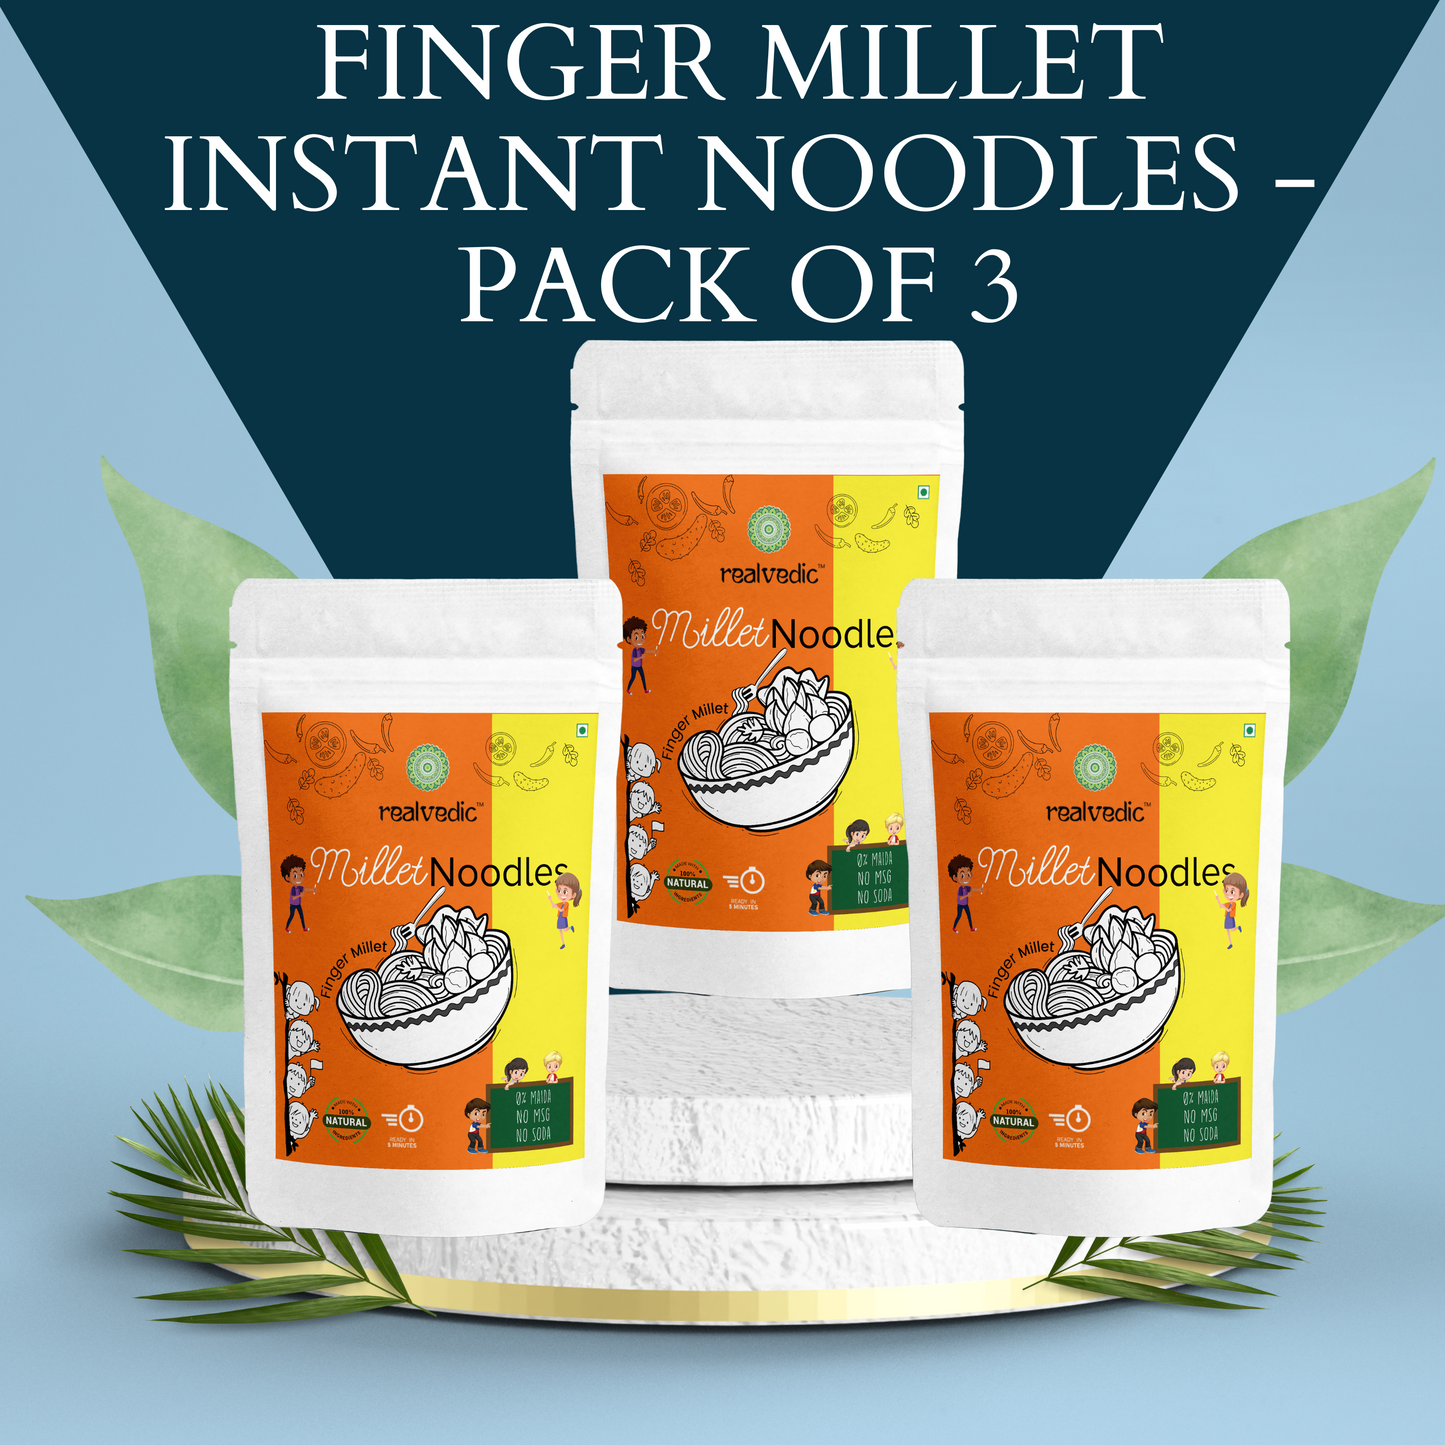 Finger Millet Instant Noodles - Pack of 3